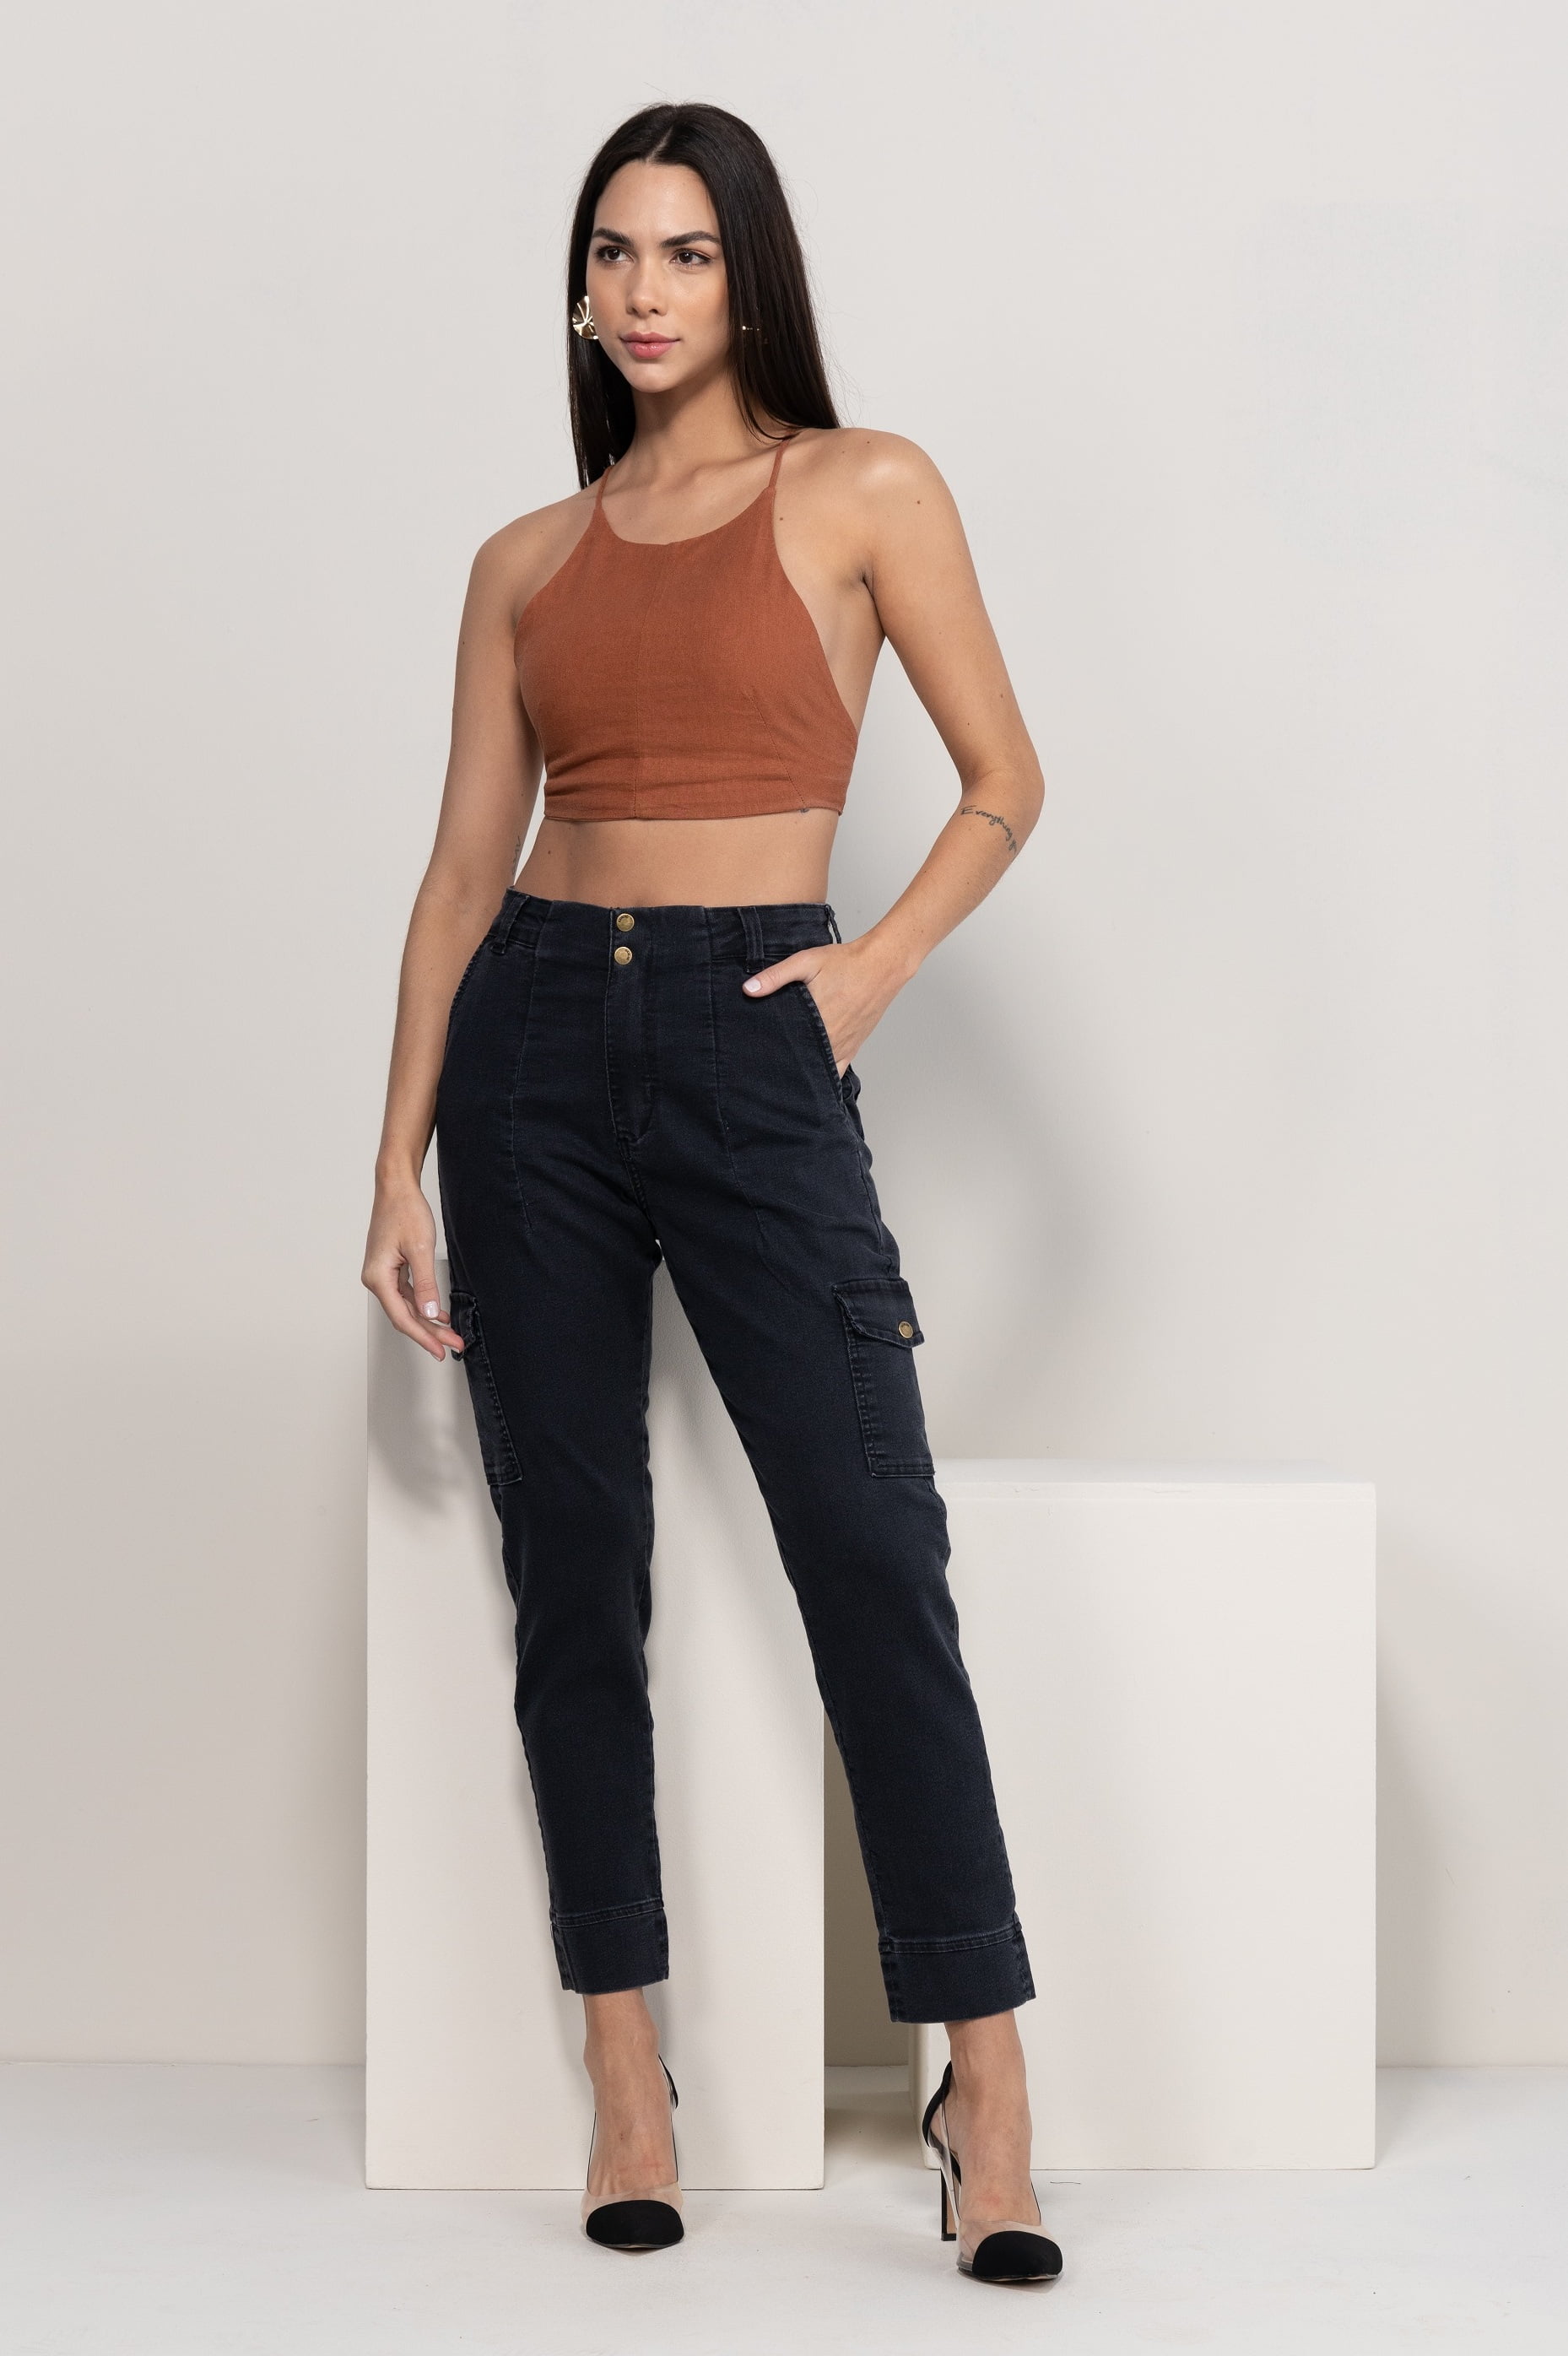 Calça Cargo Feminina Preta na Oxiblue Jeans